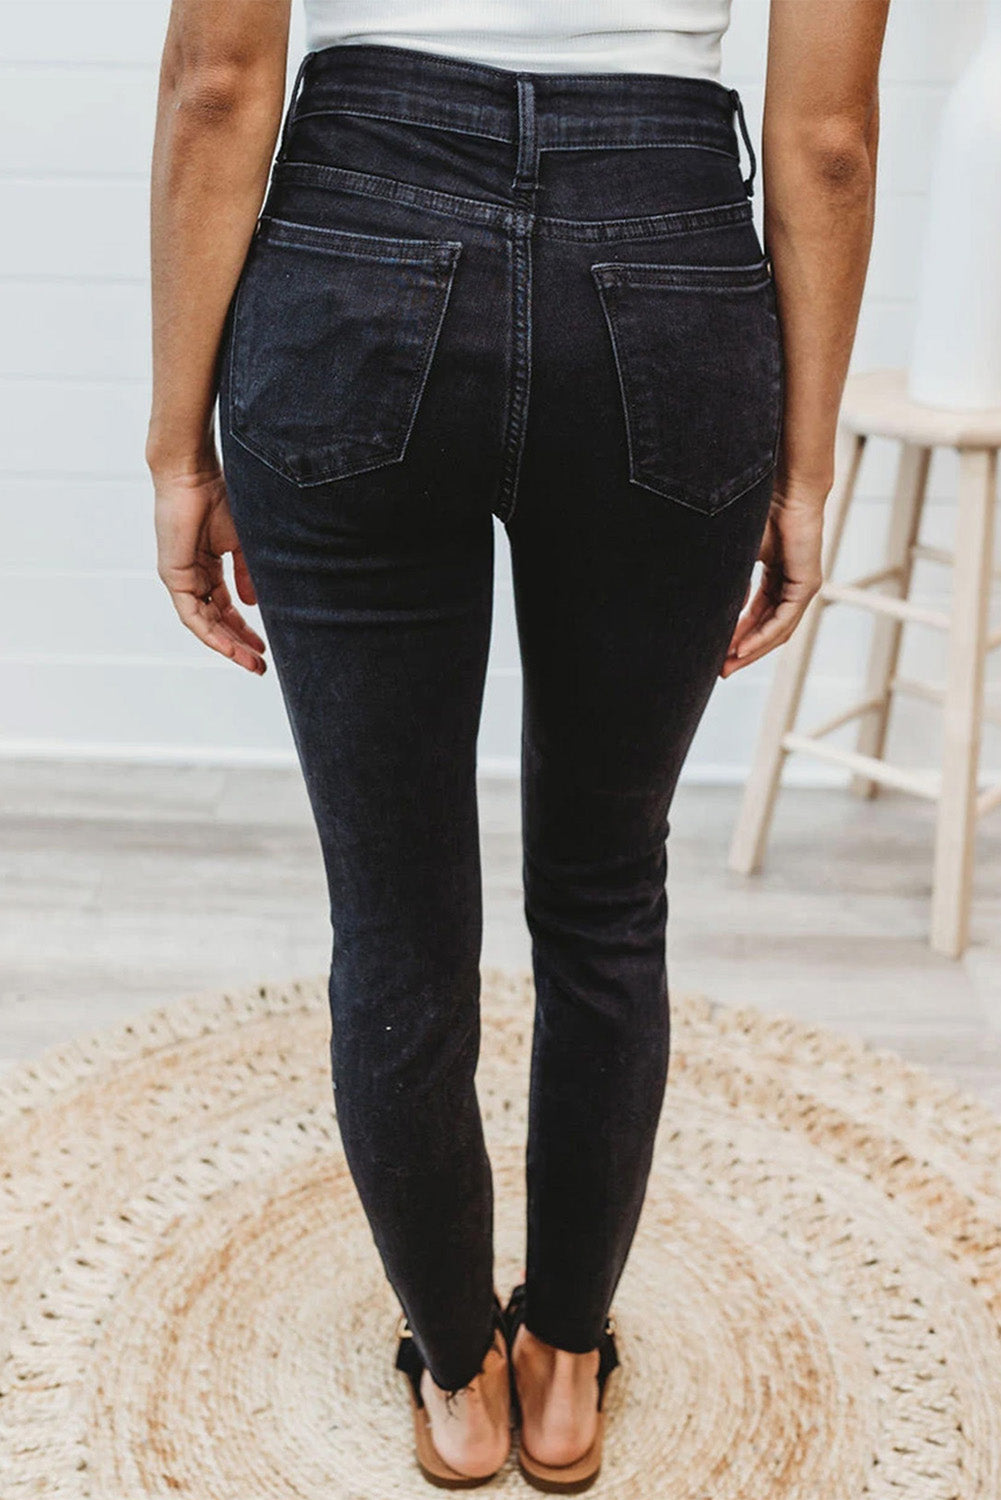 Leopard Patchwork Distressed Skinny Jeans Jeans JT's Designer Fashion